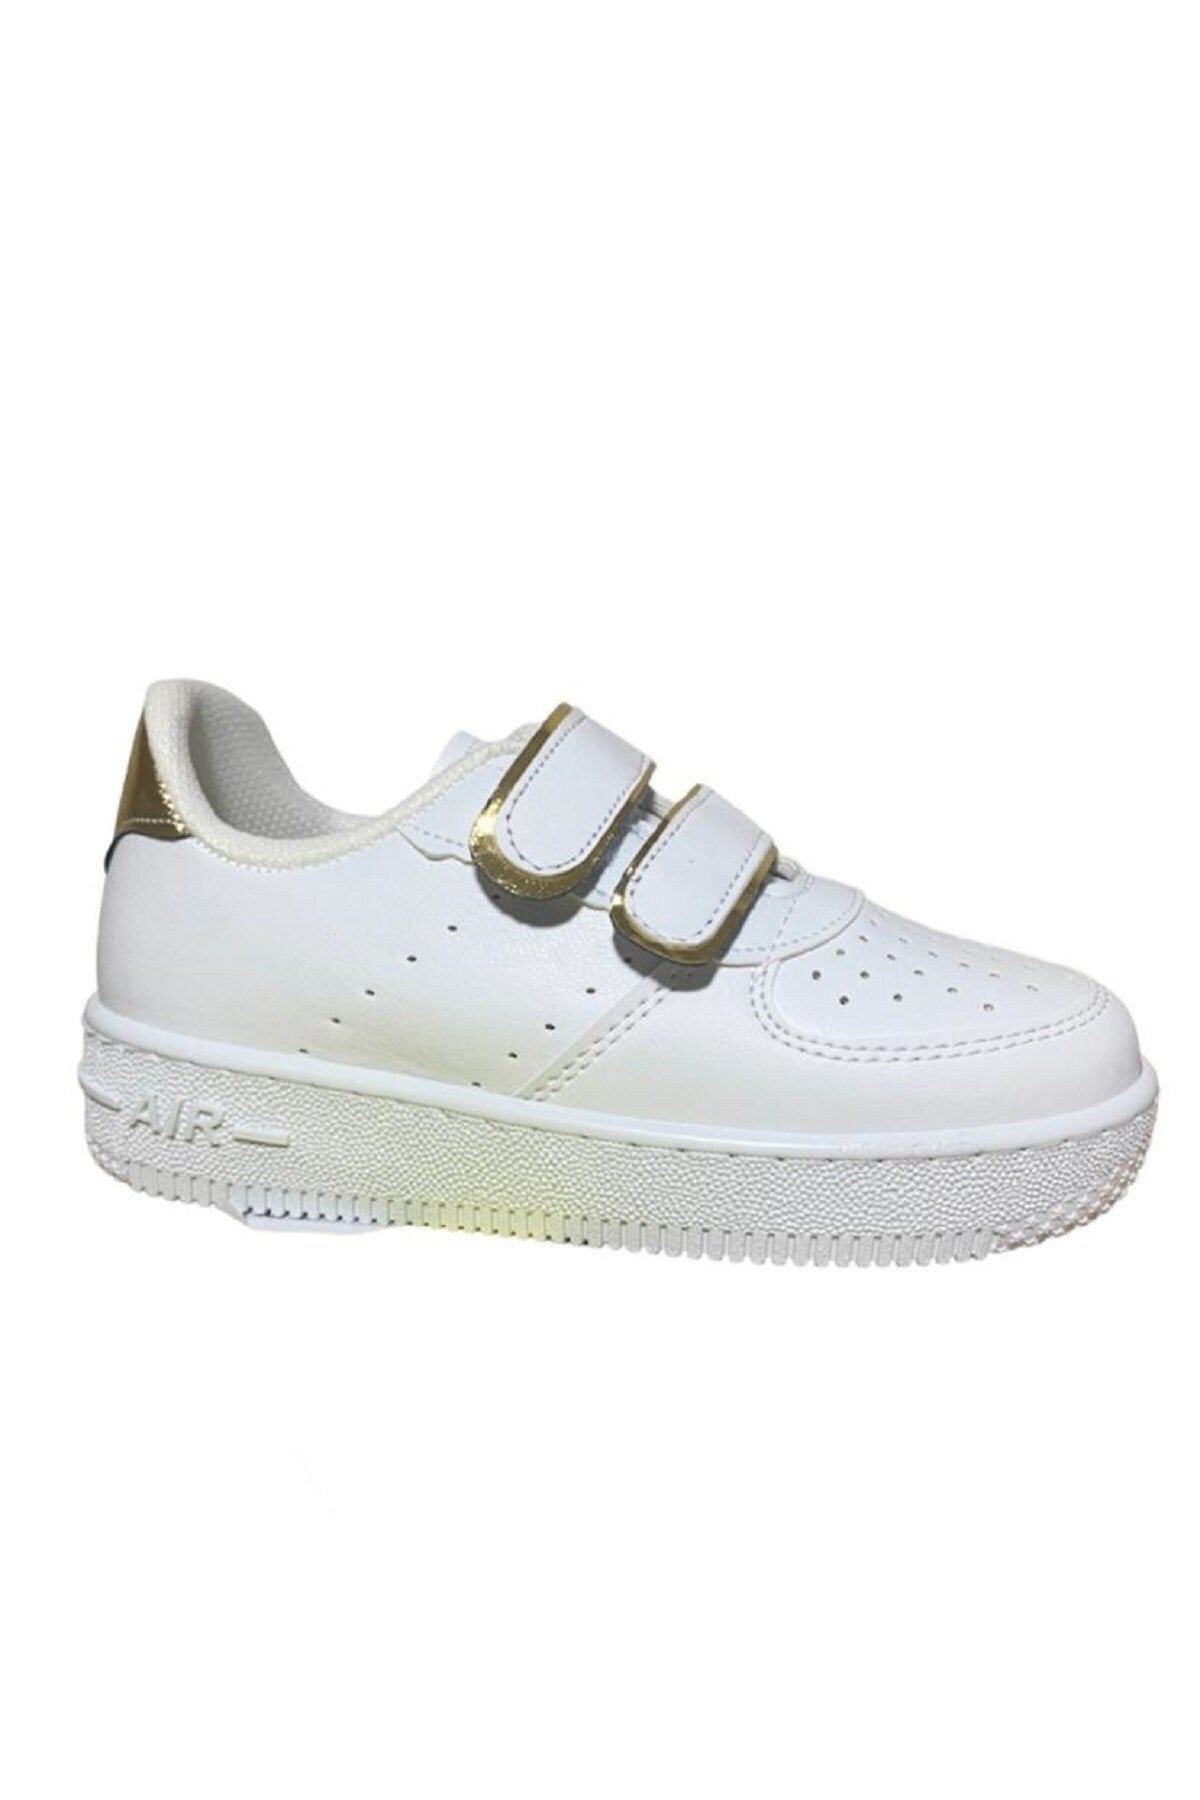 Unisex Girls Boys Hook and Loop Sneakers Sneaker - White Gold